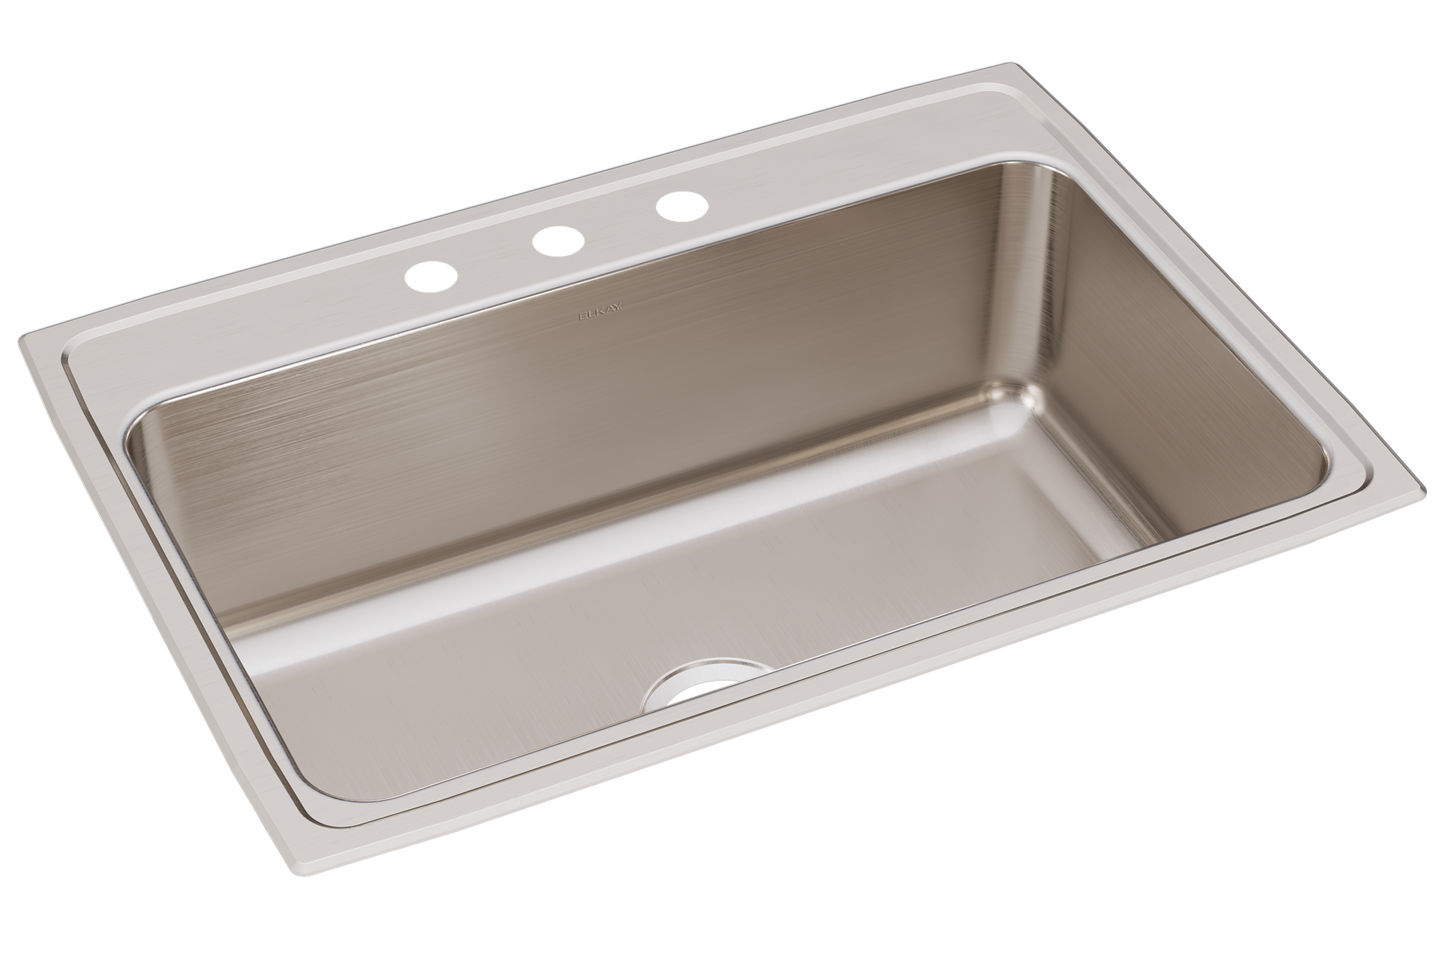 Elkay DLR3122103 - 18 Gauge Stainless Steel 31" x 22" x 10.125" Single Bowl Drop-in Kitchen Sink